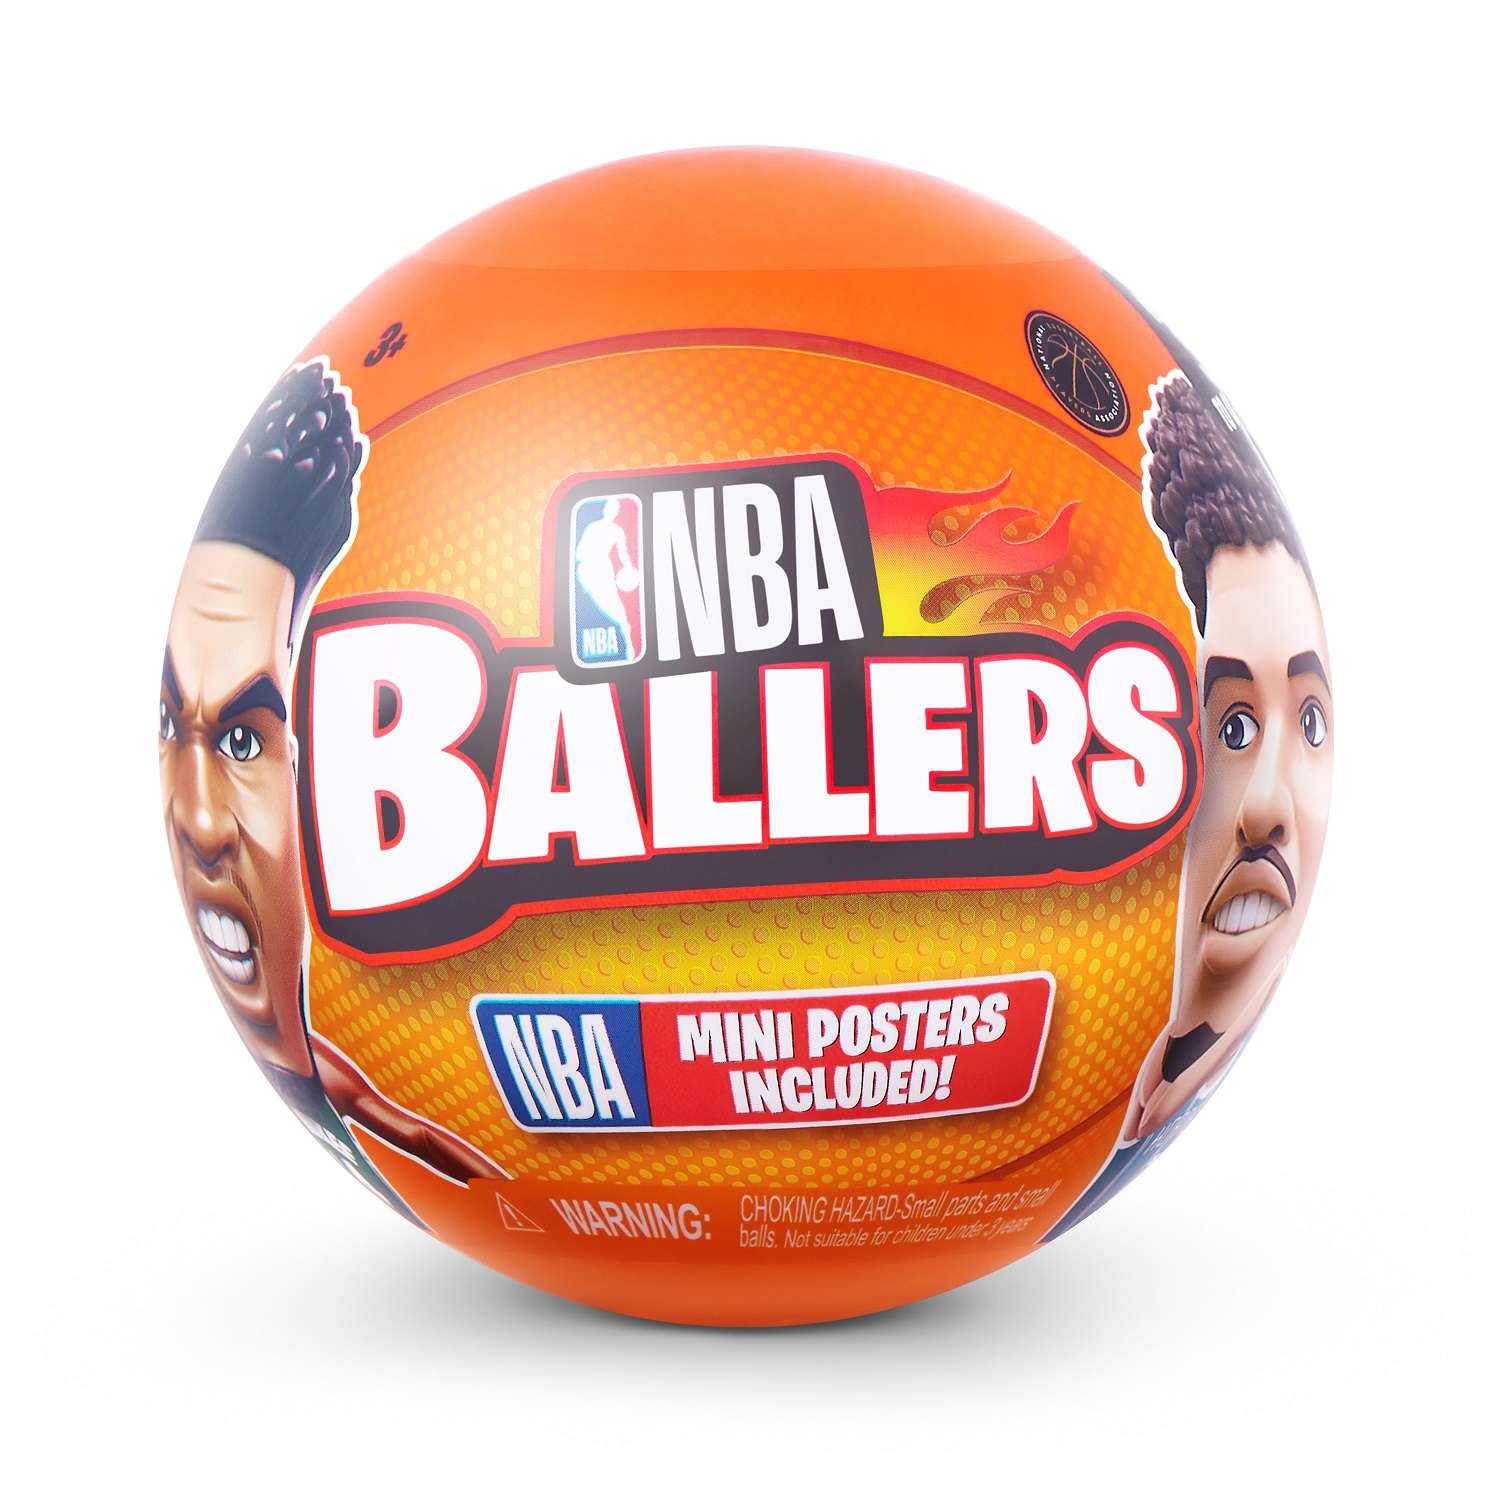 Игрушка Zuru 5 surprise NBA Ballers Шар в непрозрачной упаковке (Сюрприз) 77490GQ4-S002 - фото 12